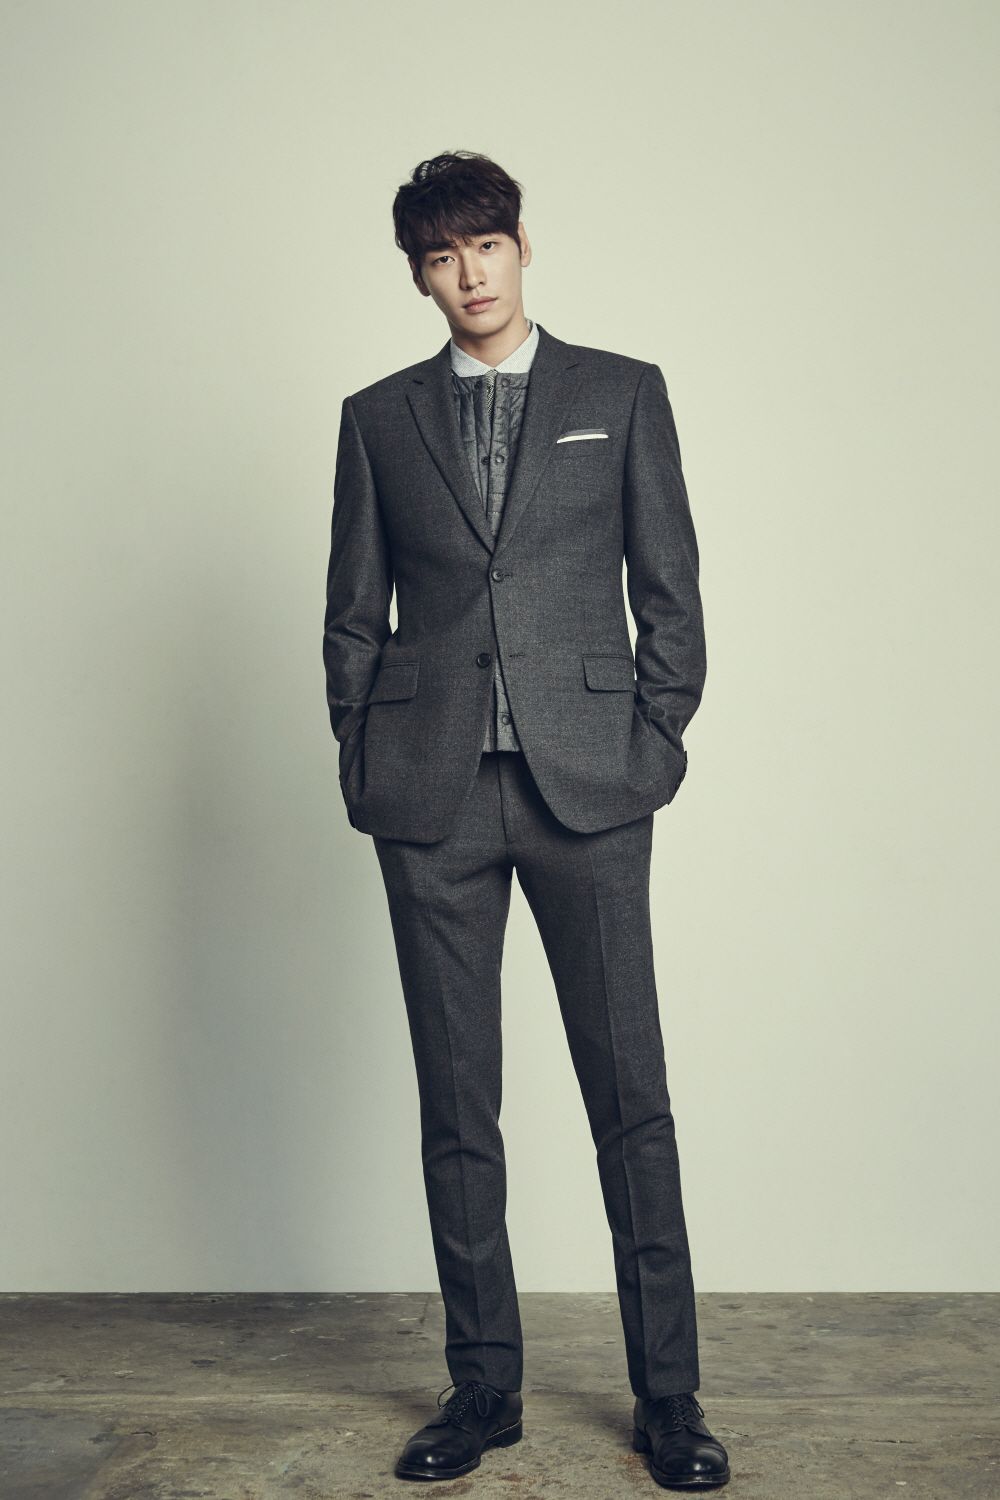 Shooting star chưa lên sóng, Lee Sung Kyung đã tham gia phim mới: Nam chính cực manly, từng đóng chung với Lee Jong Suk, Park Shin Hye, Ji Chang Wook và Yoona - Ảnh 5.